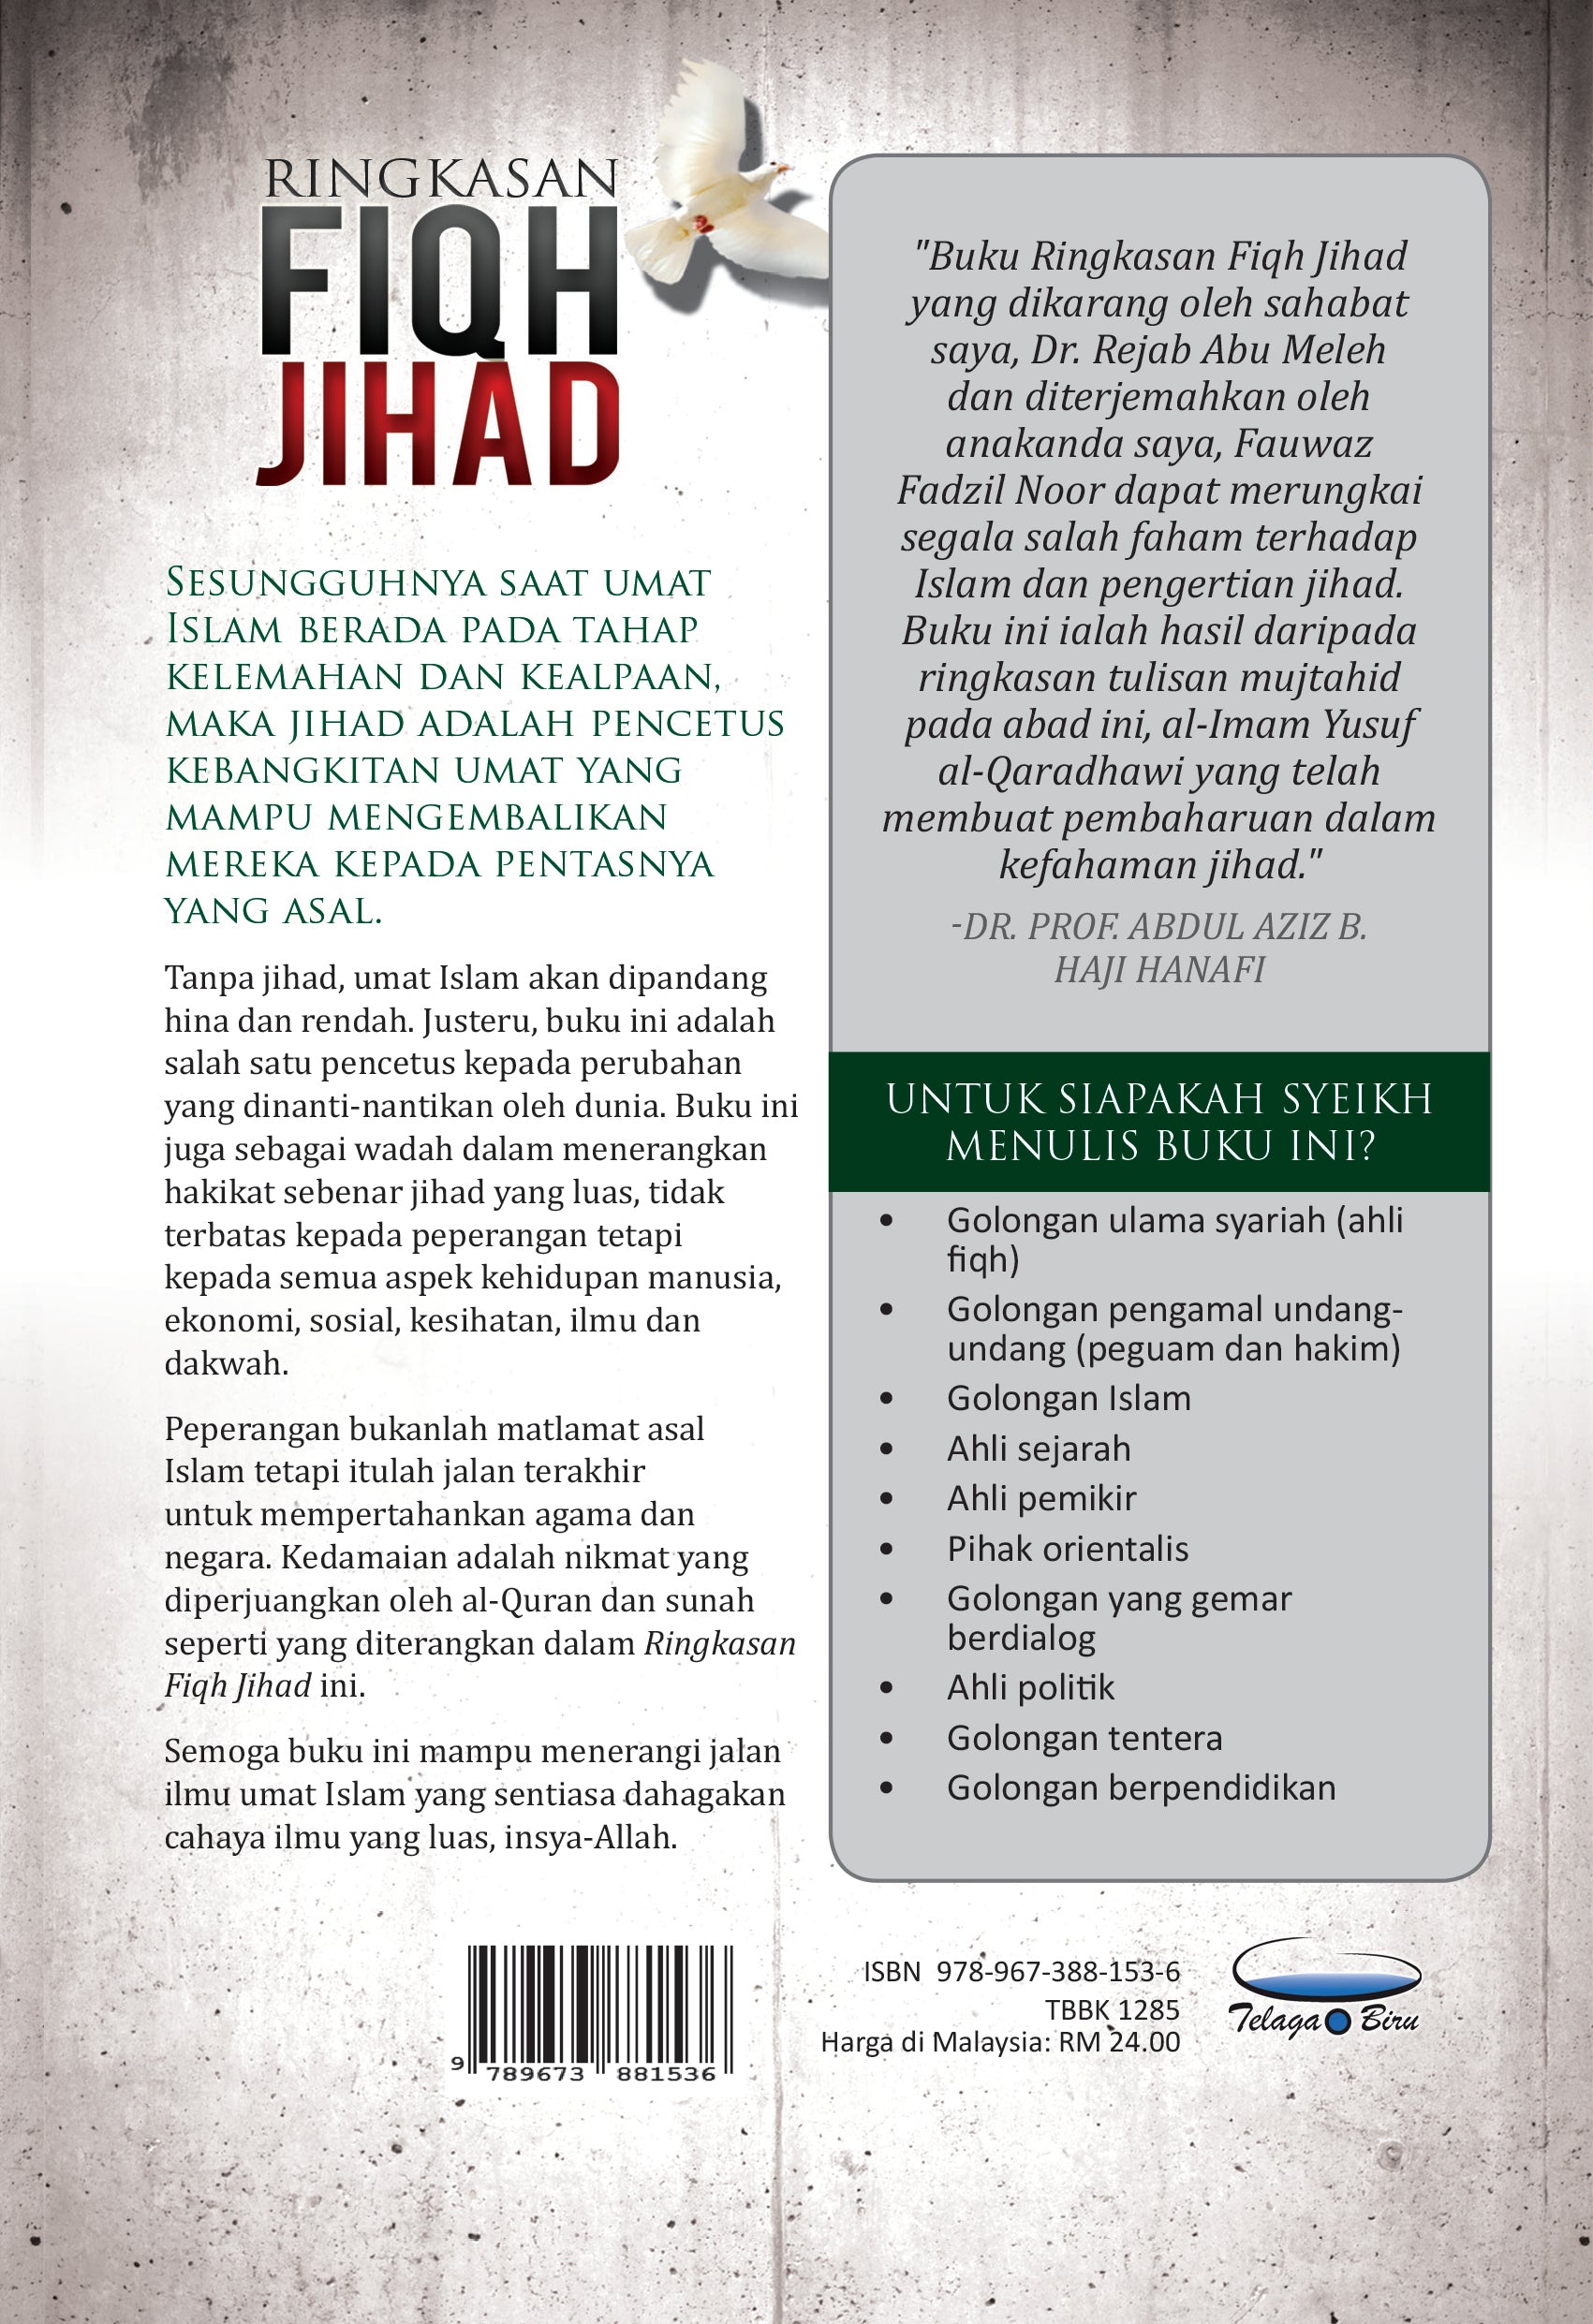 Ringkasan Fiqh Jihad - (TBBK1285)